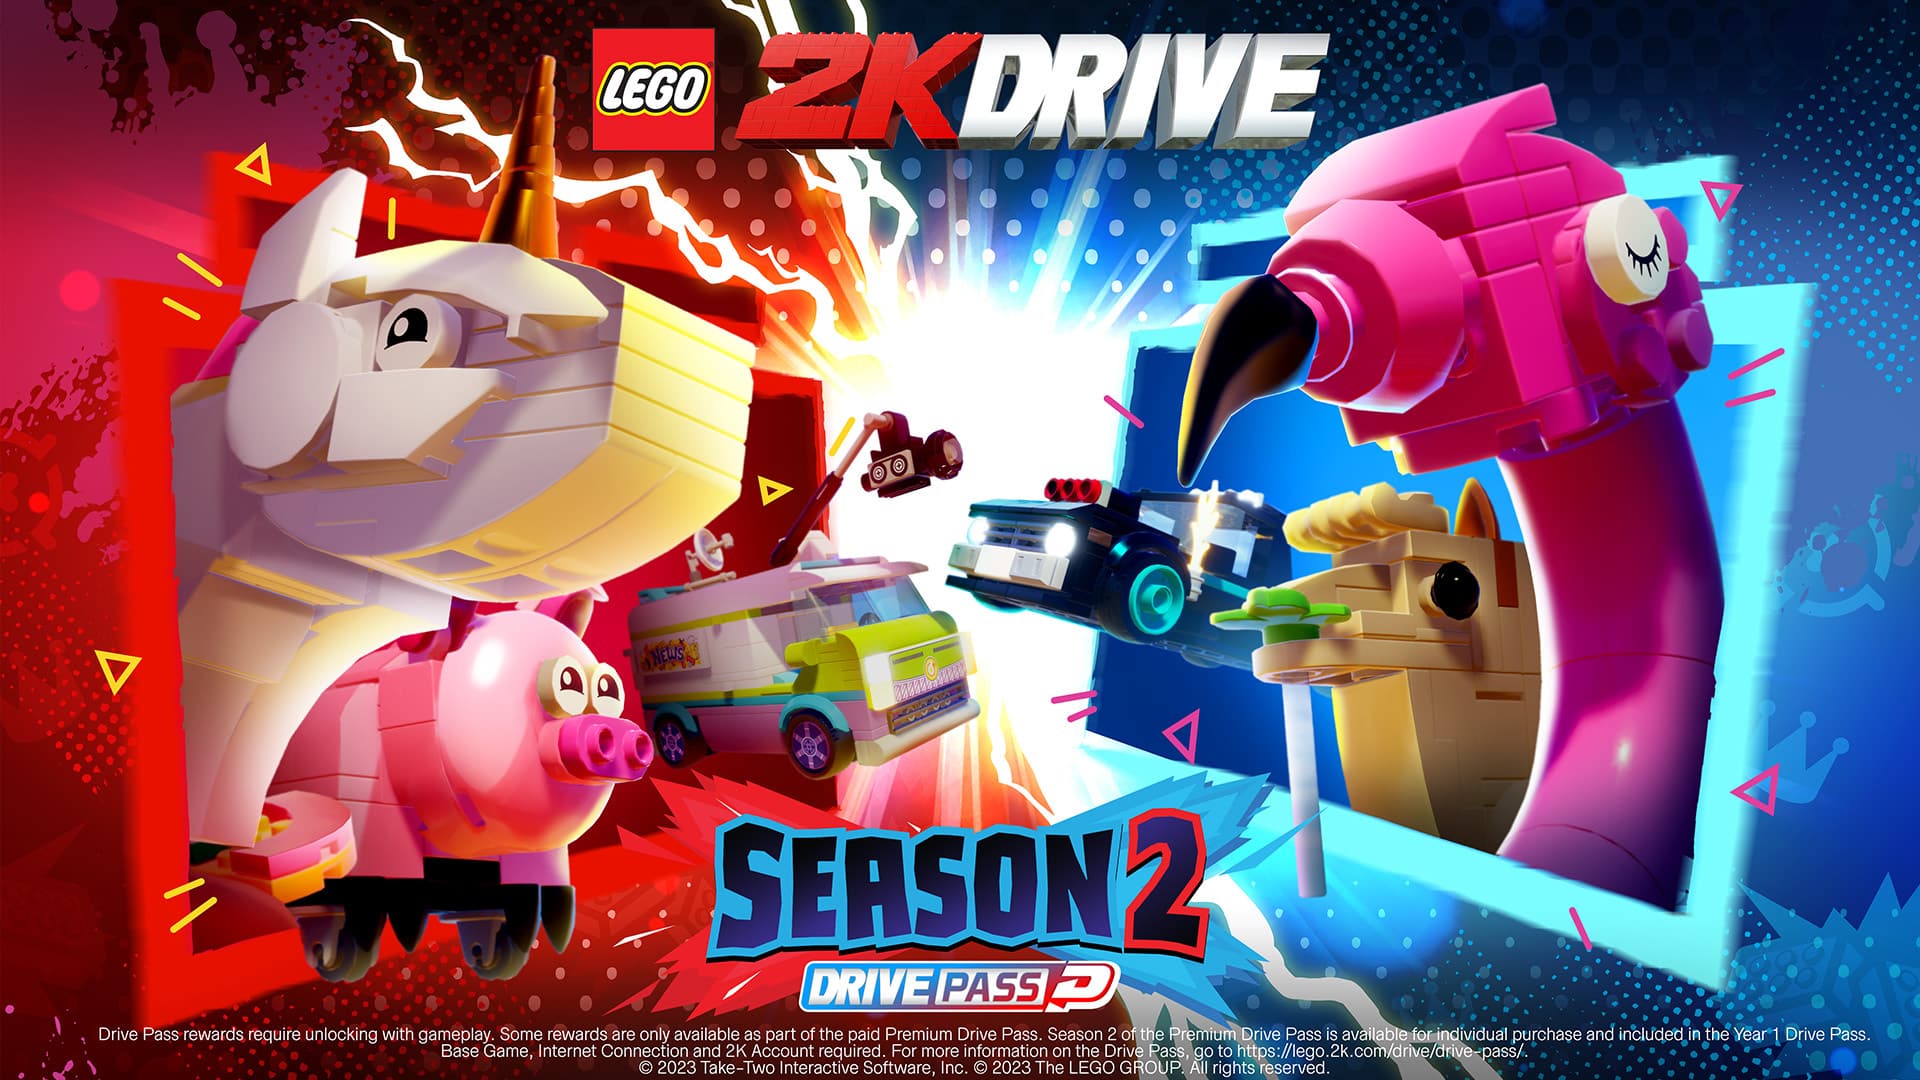 LEGO-2K-Drive-Drive-Pass-Season-2-Key-Art